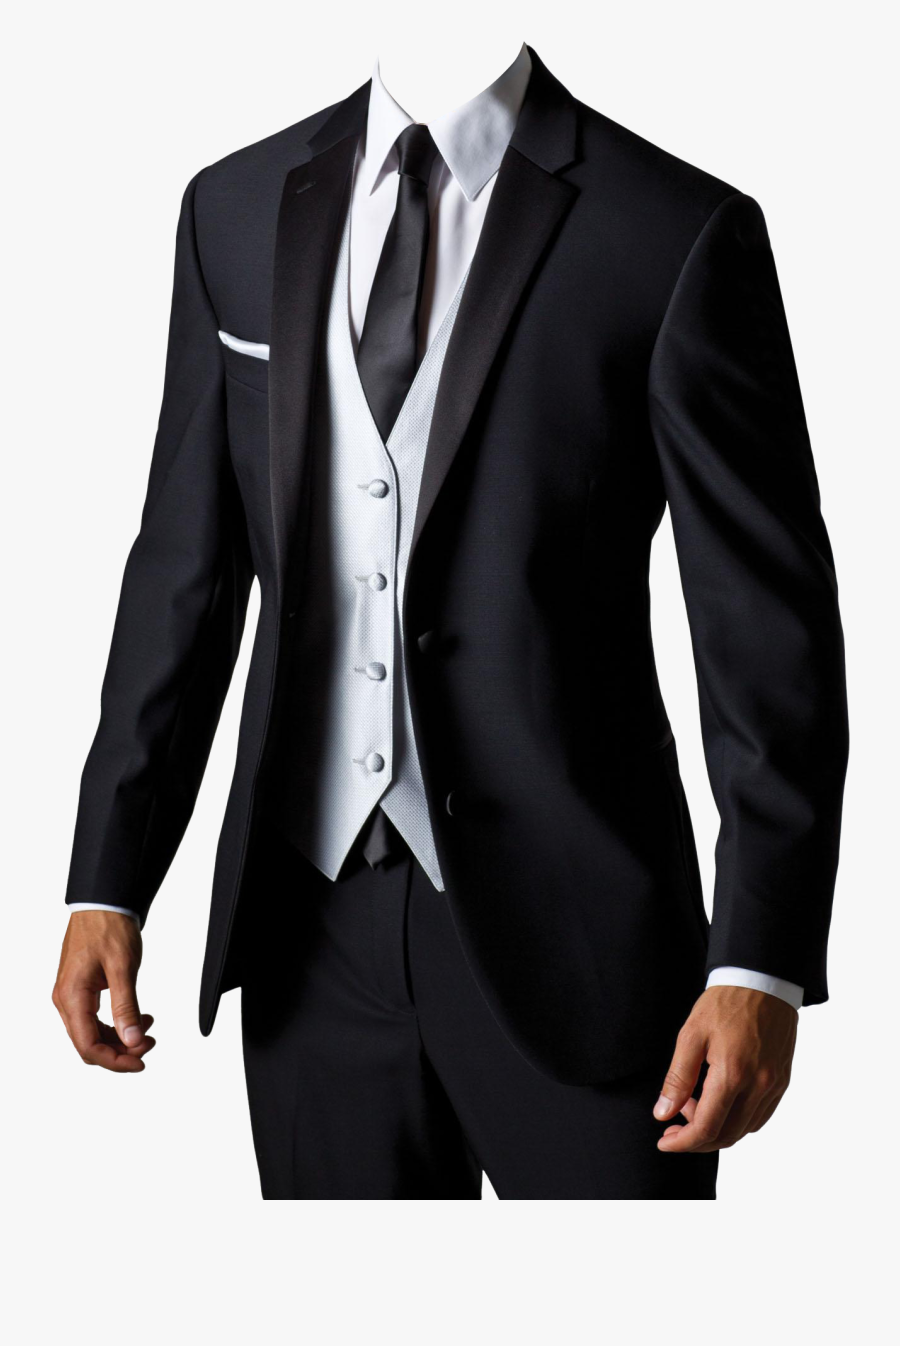 Suit Png Image - Dress For Men Png, Transparent Clipart